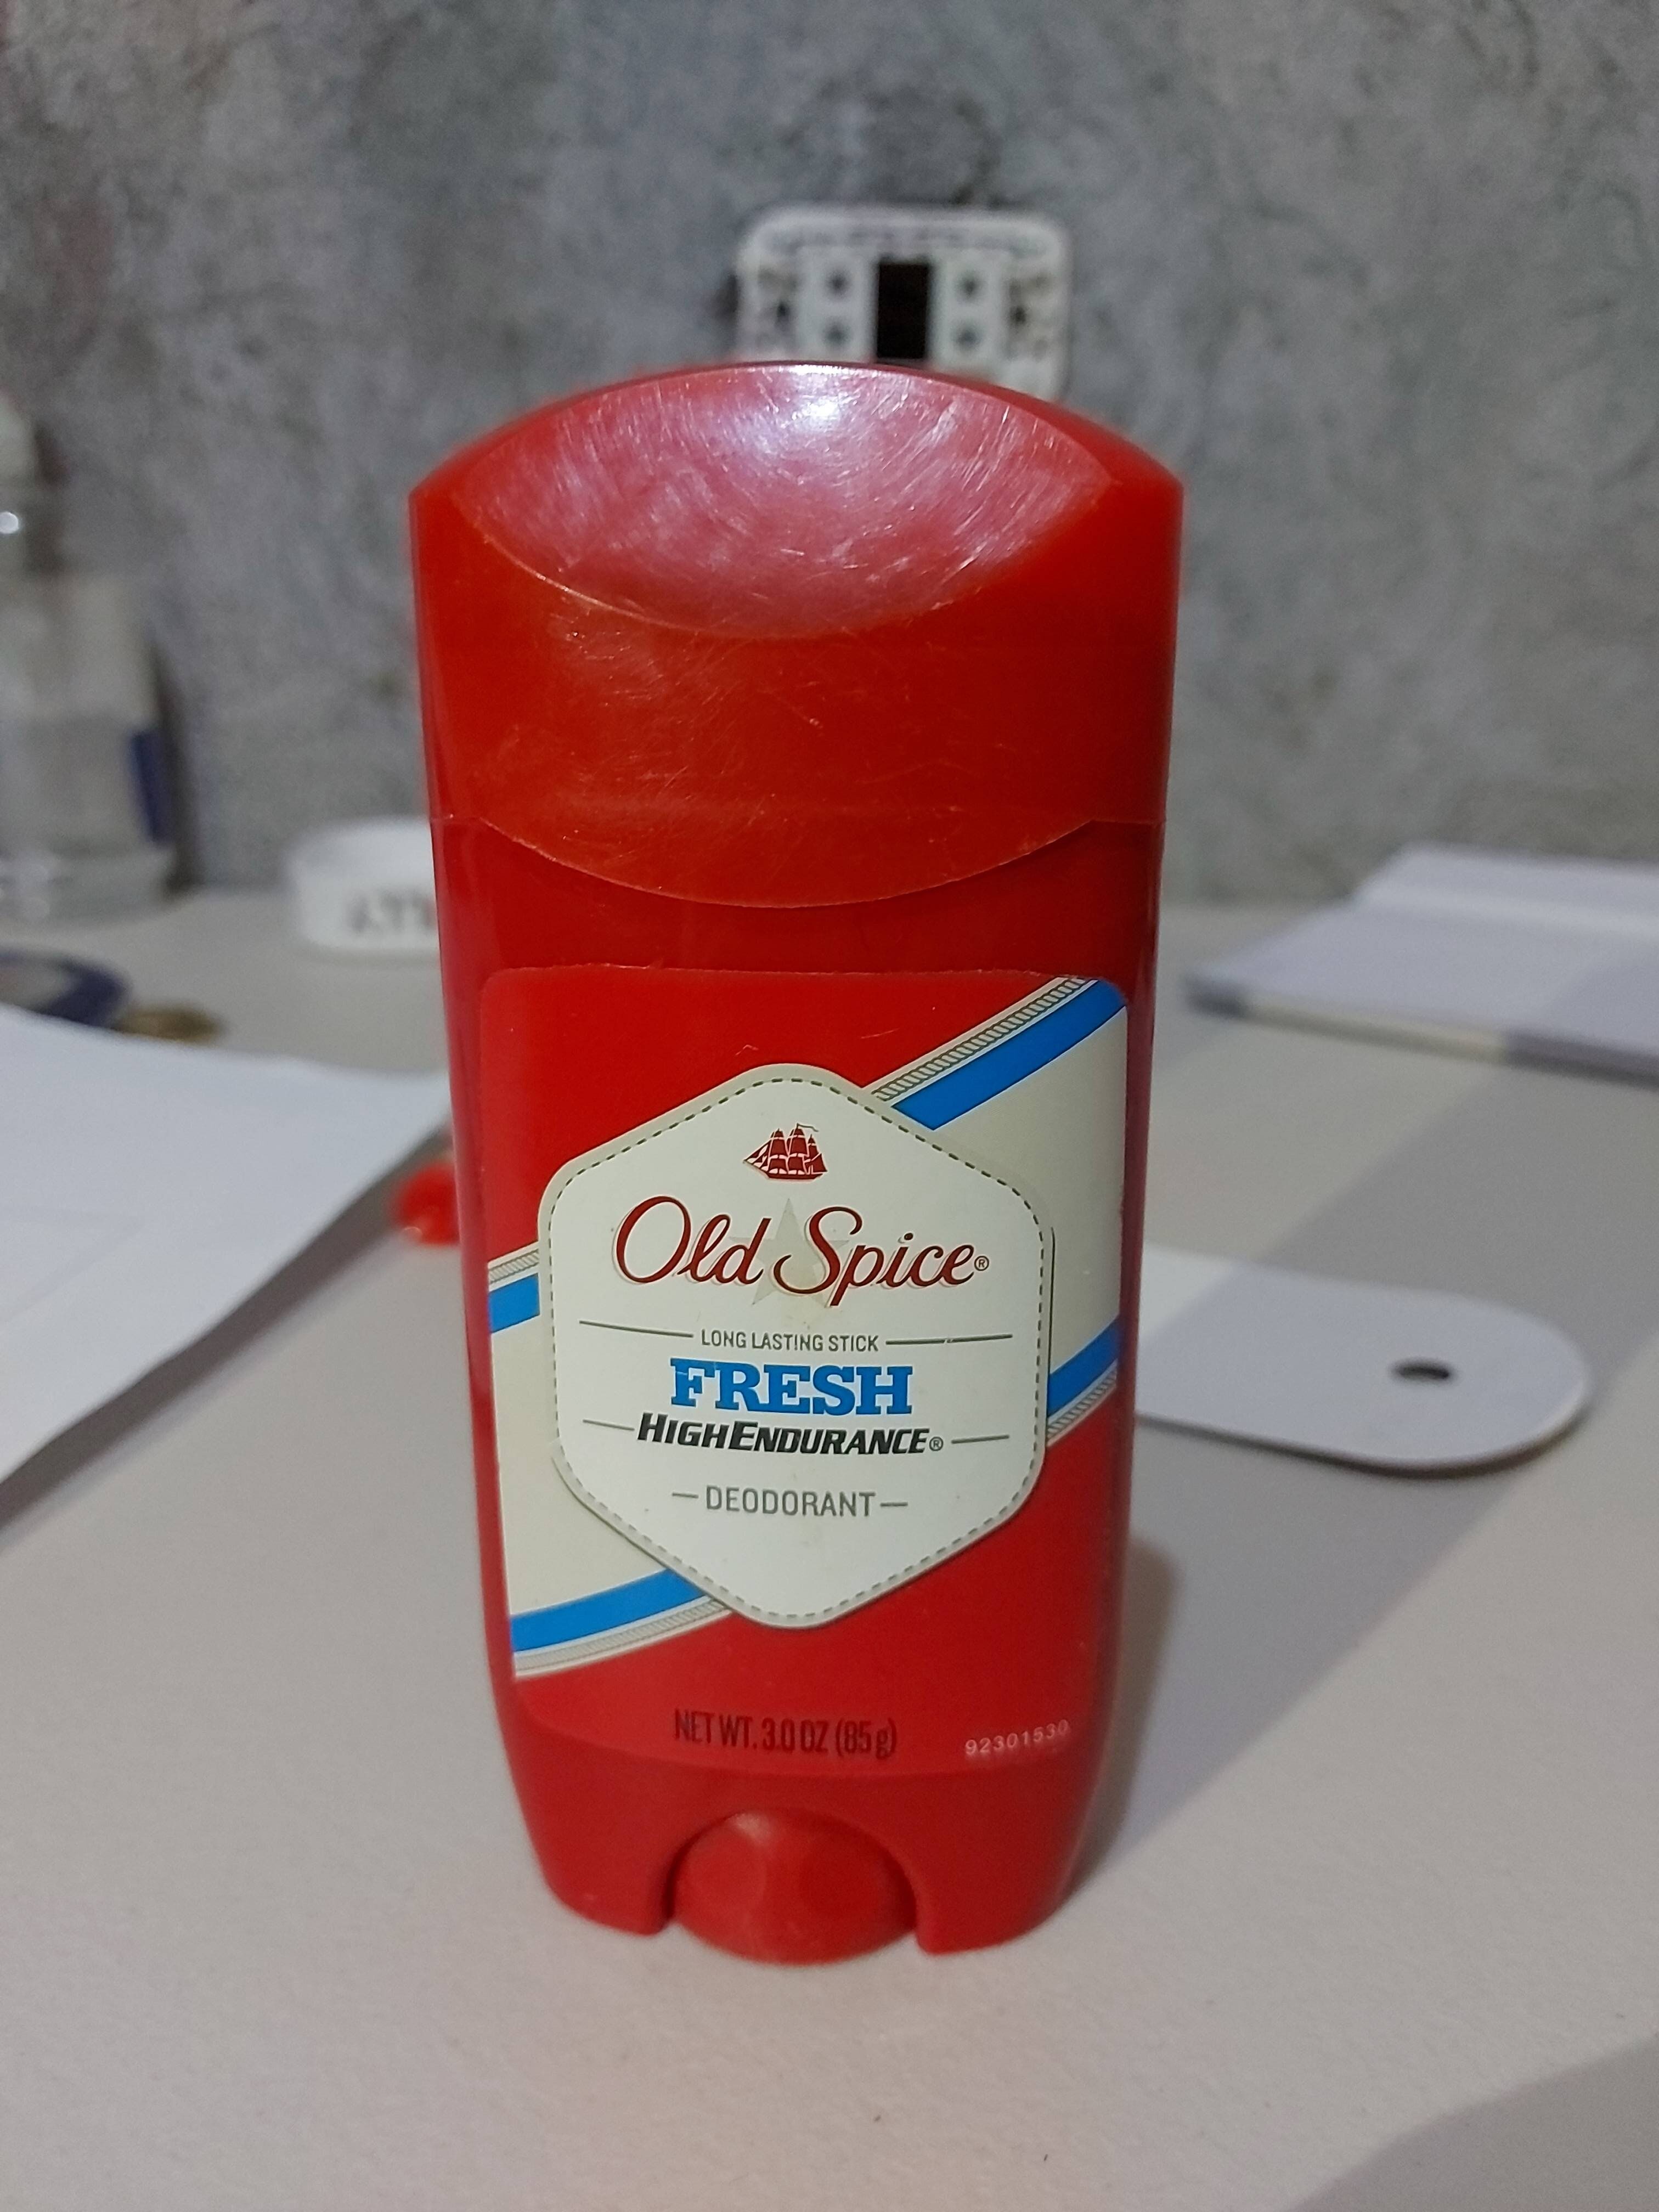 Old Spice High Endurance Deodorant - Produkt - en